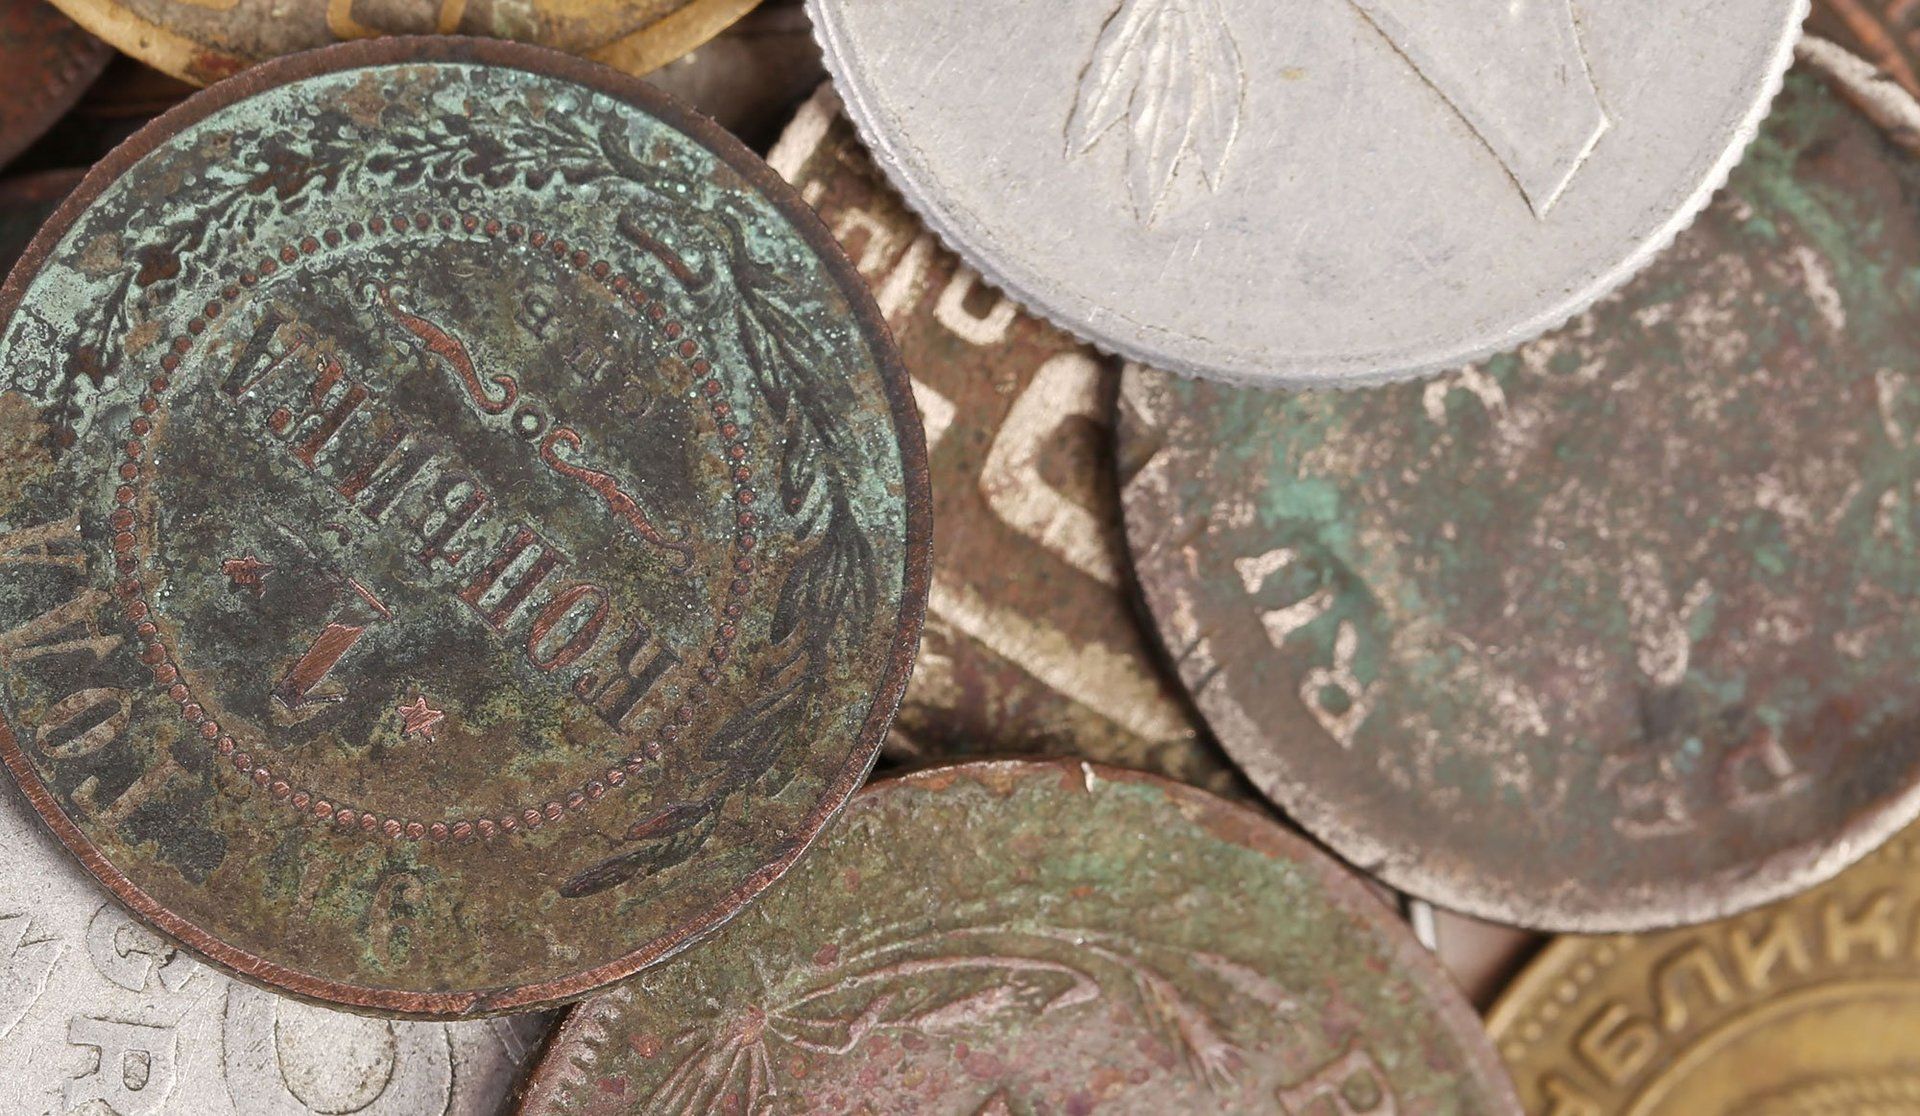 Rare coins